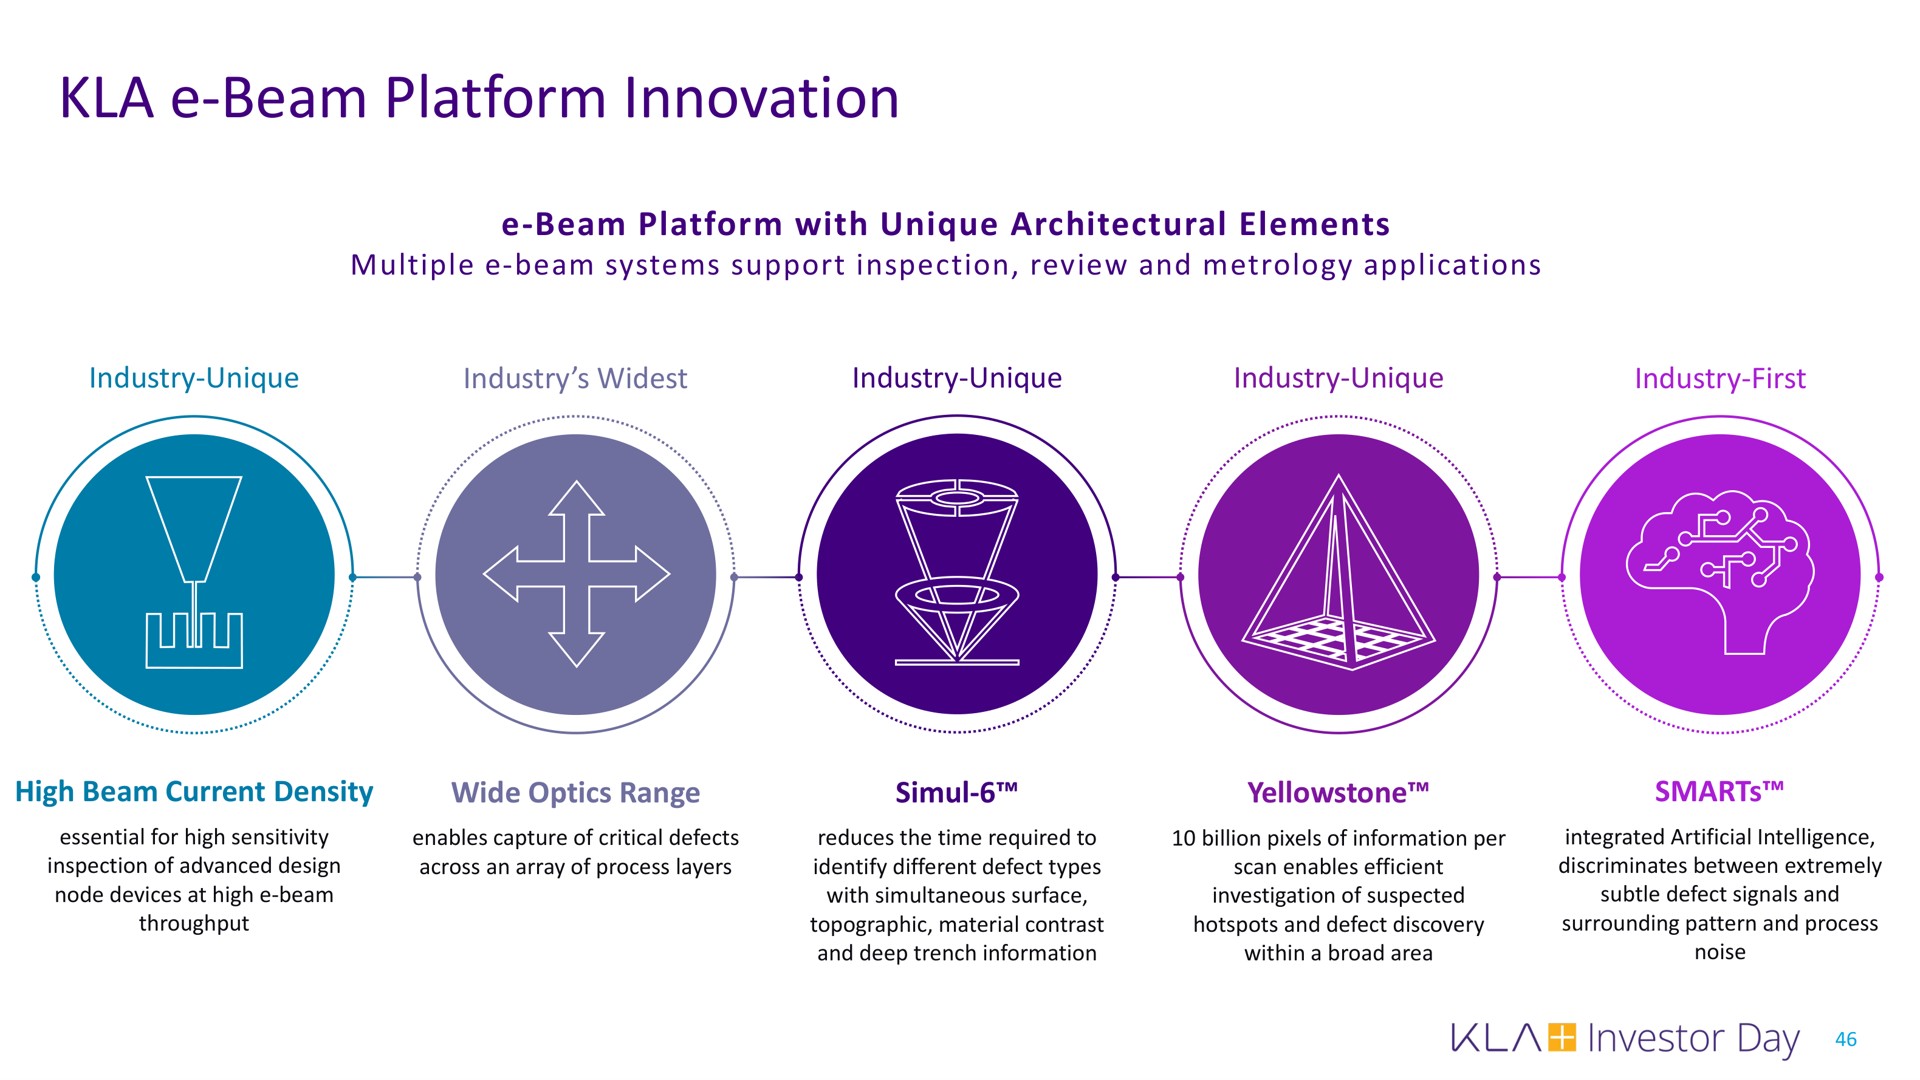 beam platform innovation | KLA